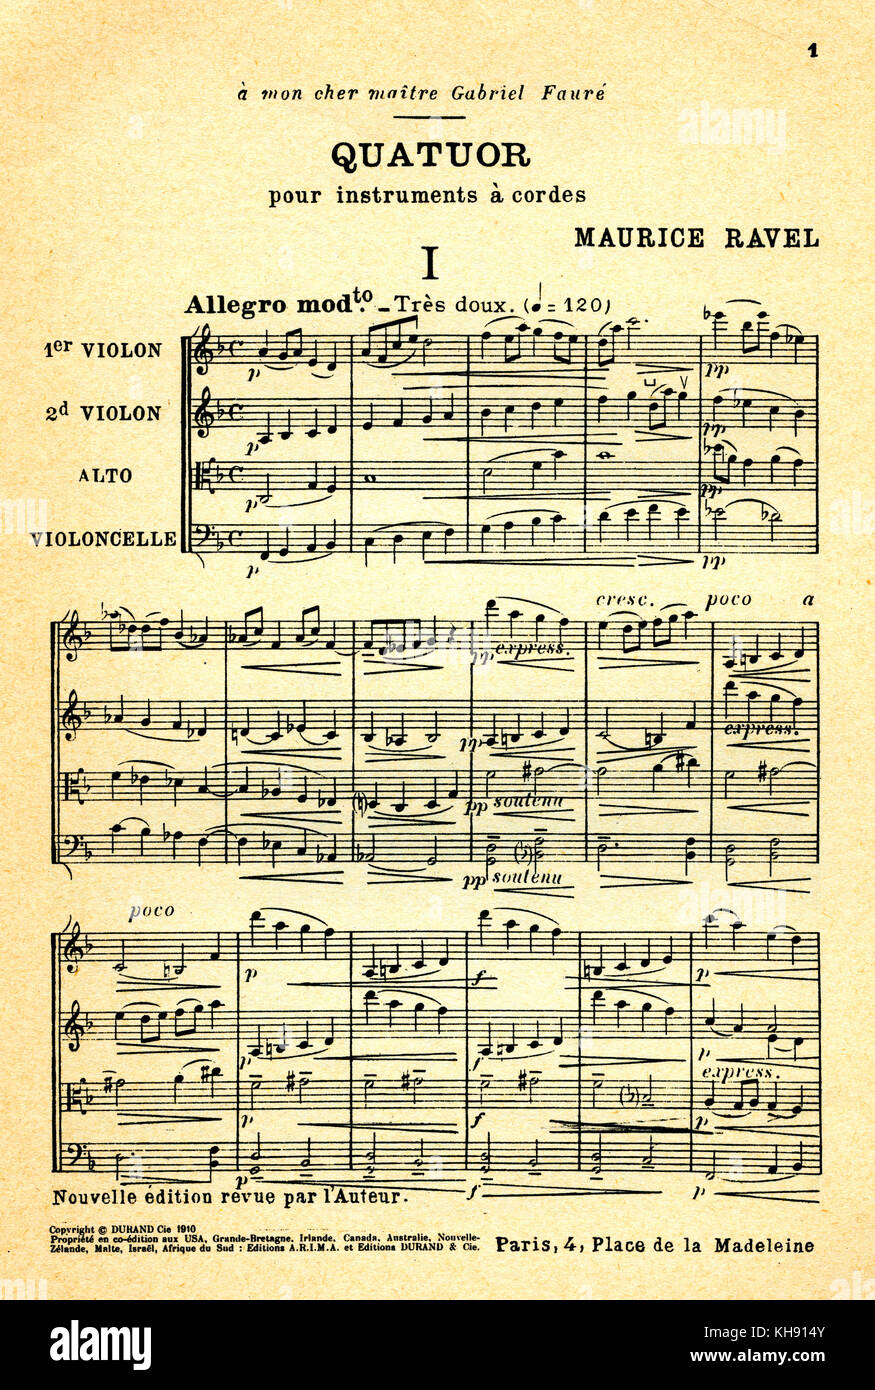 "Quatuor pour Instruments à Cordes'-Score von Maurice Ravel. Musik für Streicher. Für Gariel Fauré, französischer Komponist, 12. Mai 1845. - 4. November 1924. Herr: der französische Komponist, 17. März 1875 - 28. Dezember 1937. Von Editions Durand, Paris veröffentlicht. Stockfoto